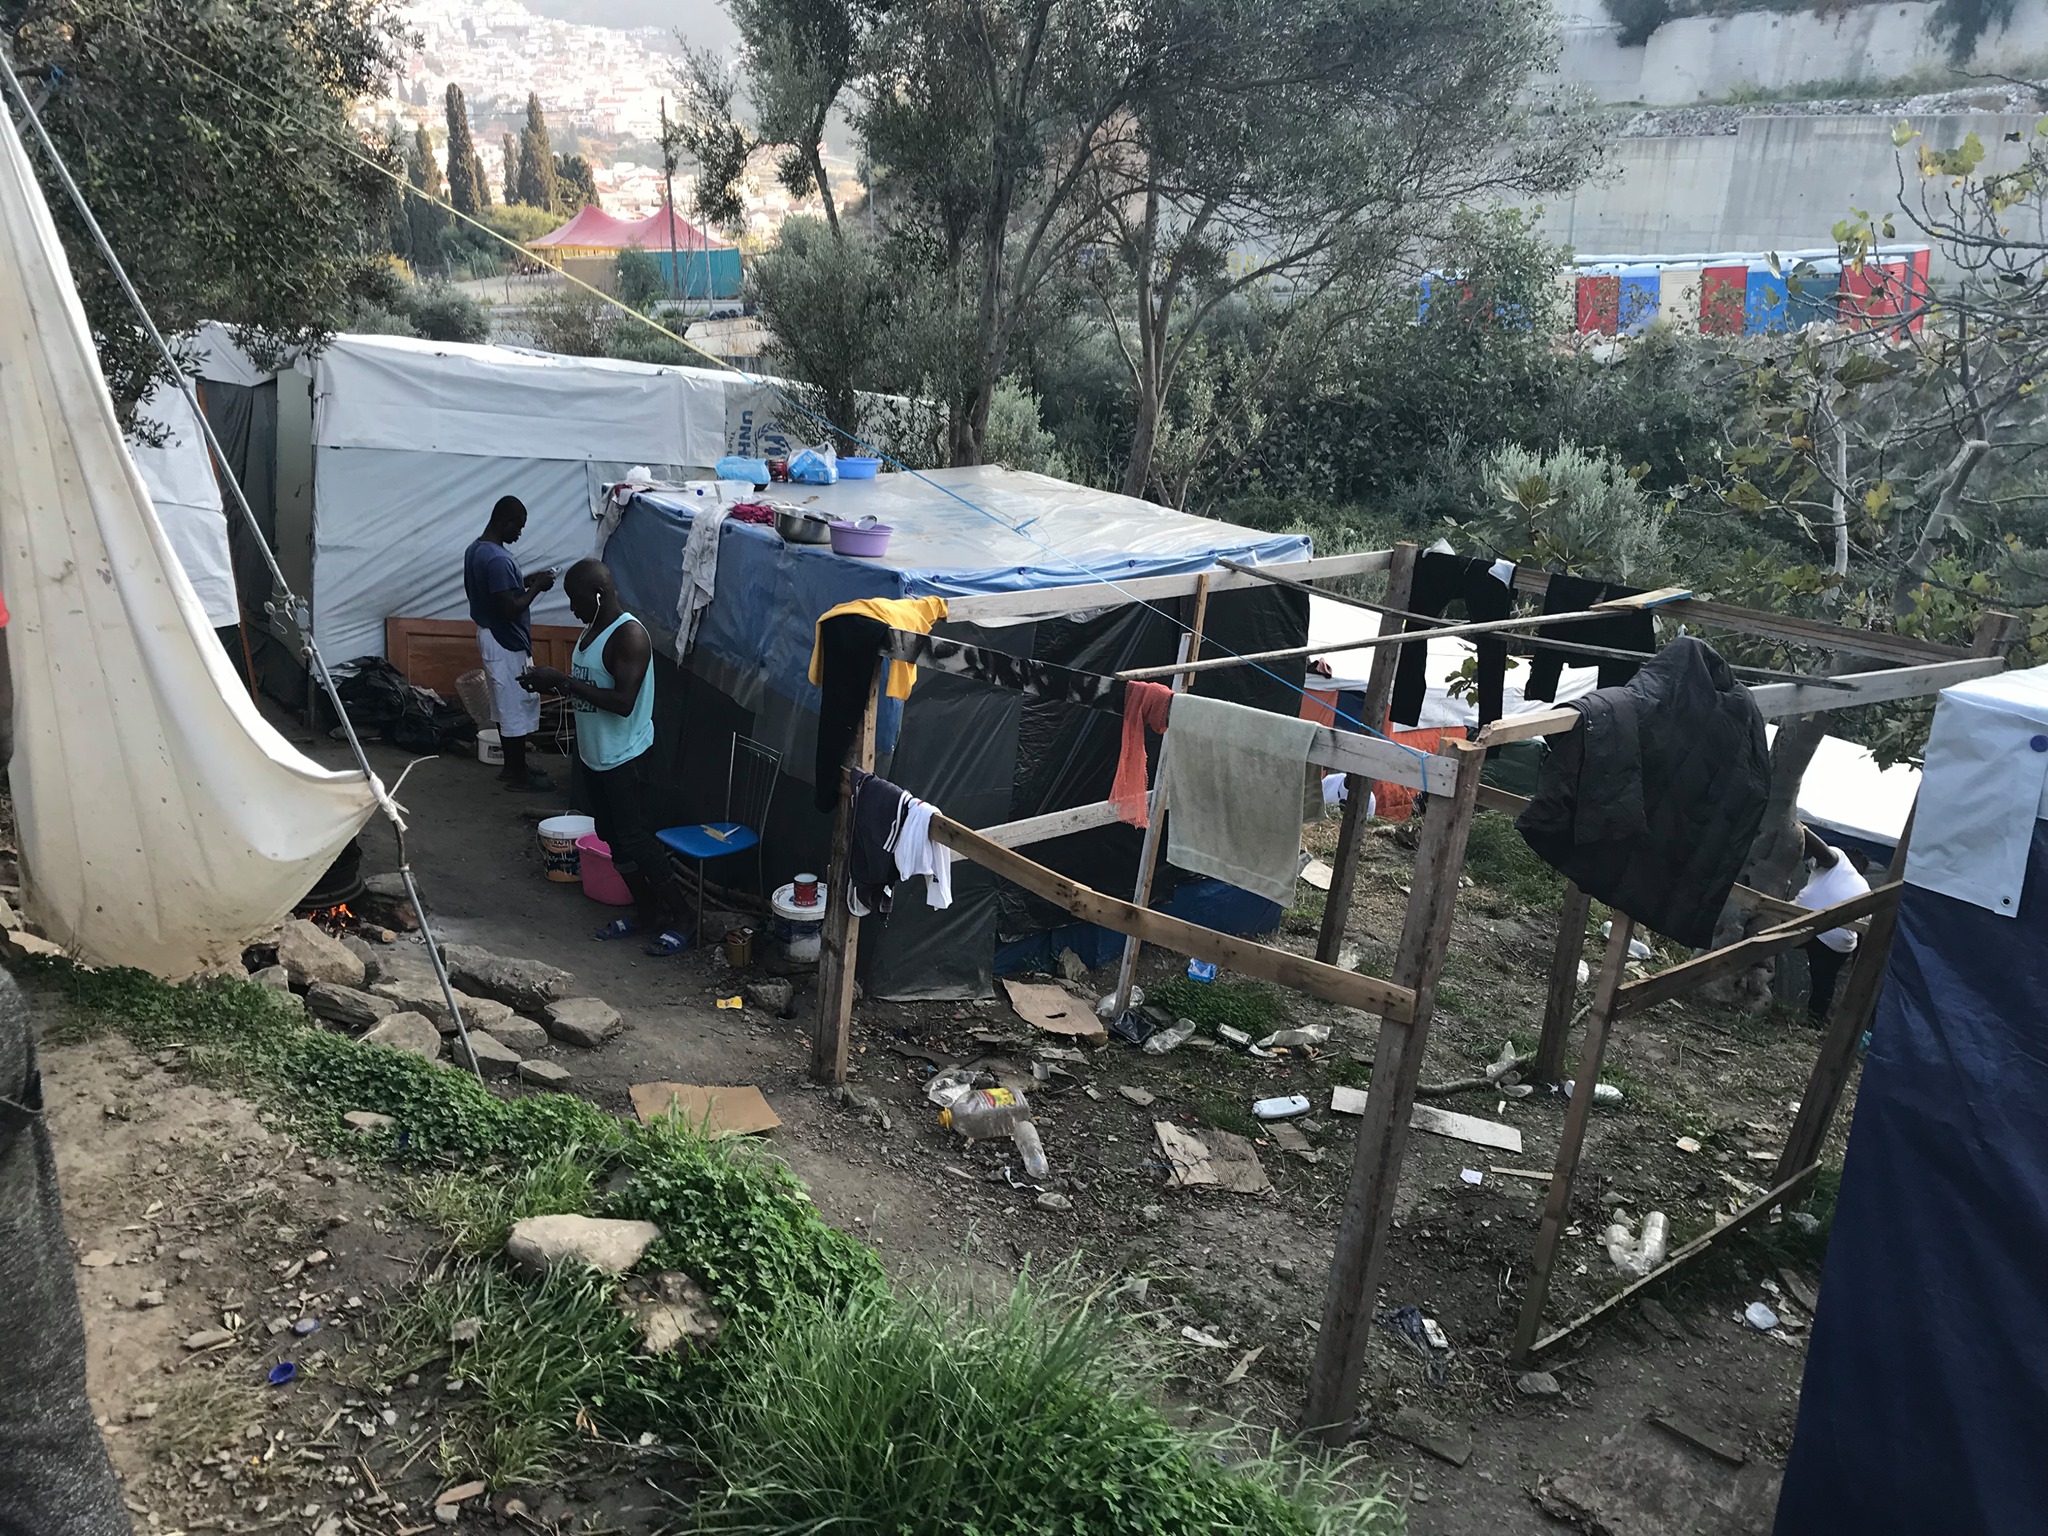 Samos Refugee Camp